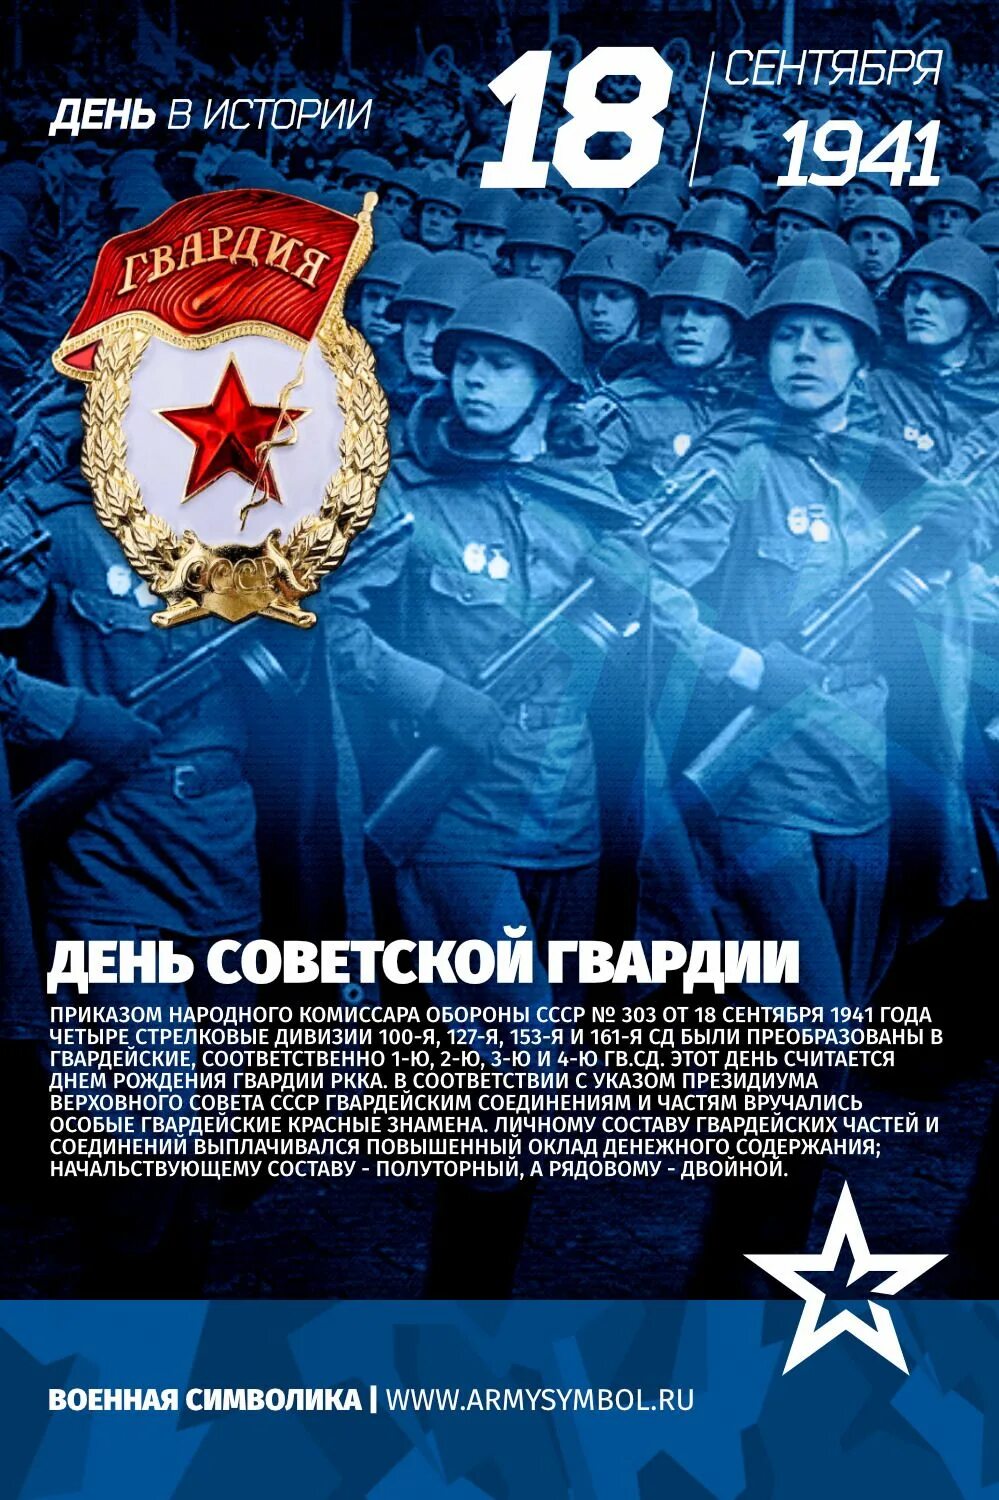 Советской гвардии 1. День рождения Советской гвардии. День рождения Советской гвардии 1941. 18 Сентября день рождения Советской гвардии. 18 Сентября 1941 года день рождения Советской гвардии.